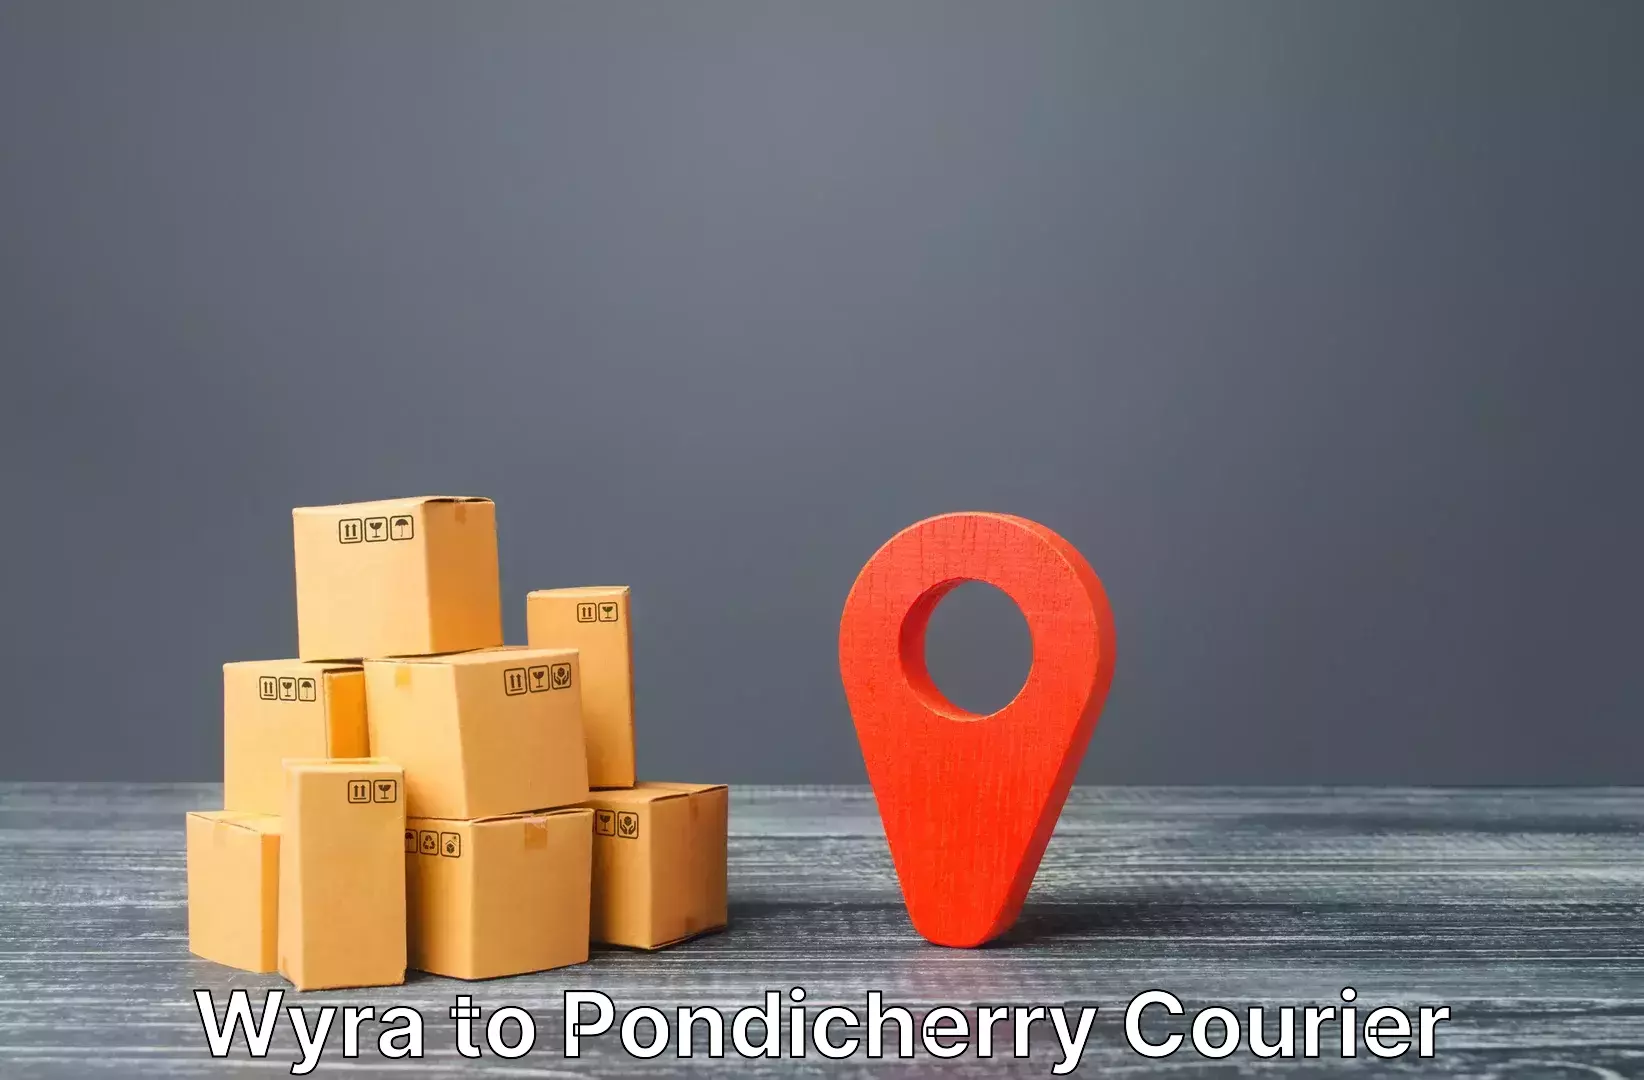 Luggage shipment specialists Wyra to Pondicherry University